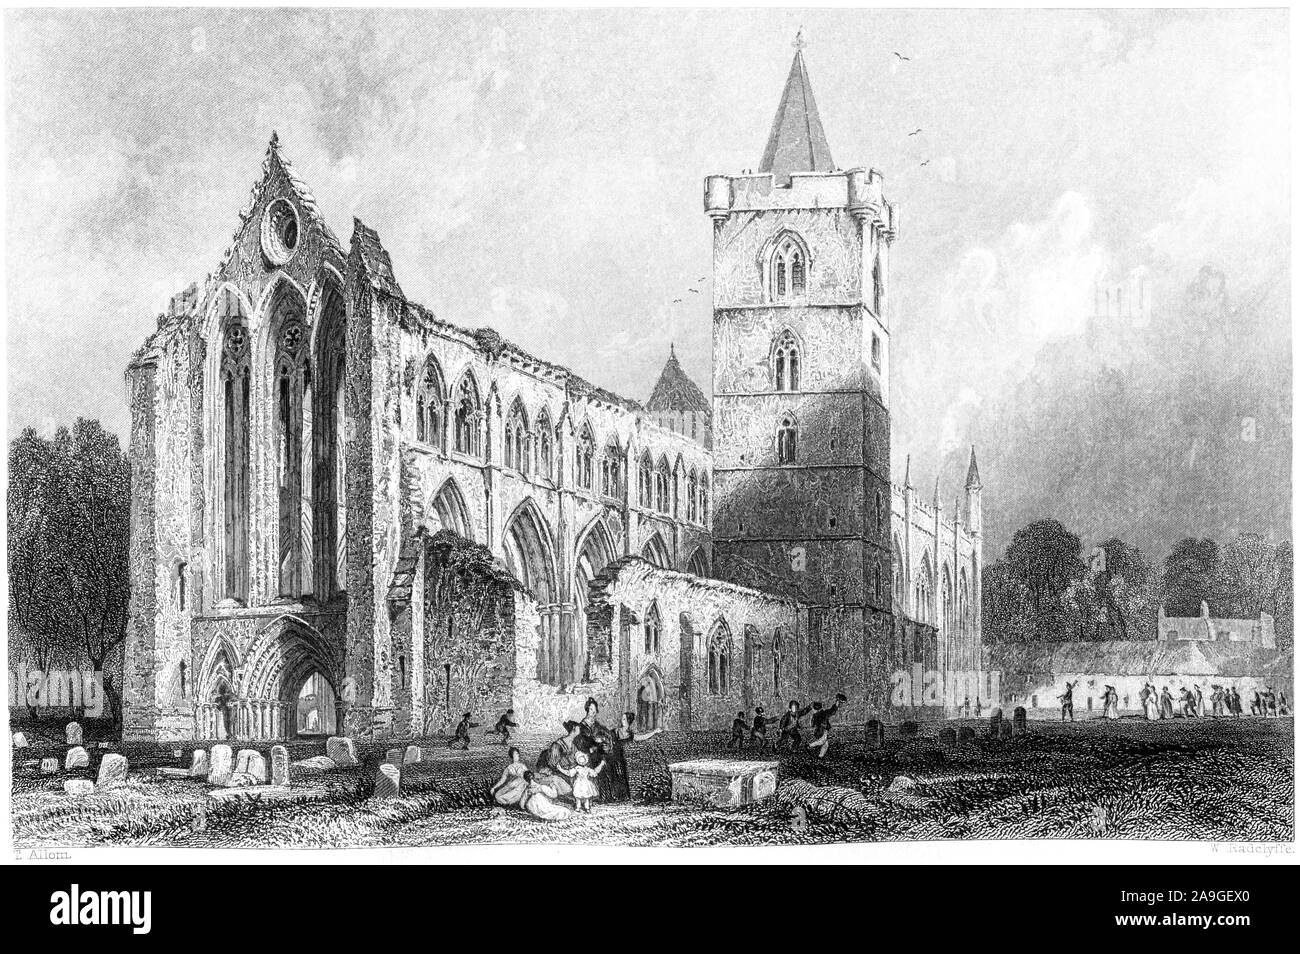 Eine Gravur der Dumblane (Dunblane) Kathedrale Perthshire gescannt und in hoher Auflösung aus einem Buch im Jahre 1859 gedruckt. Glaubten copyright frei. Stockfoto